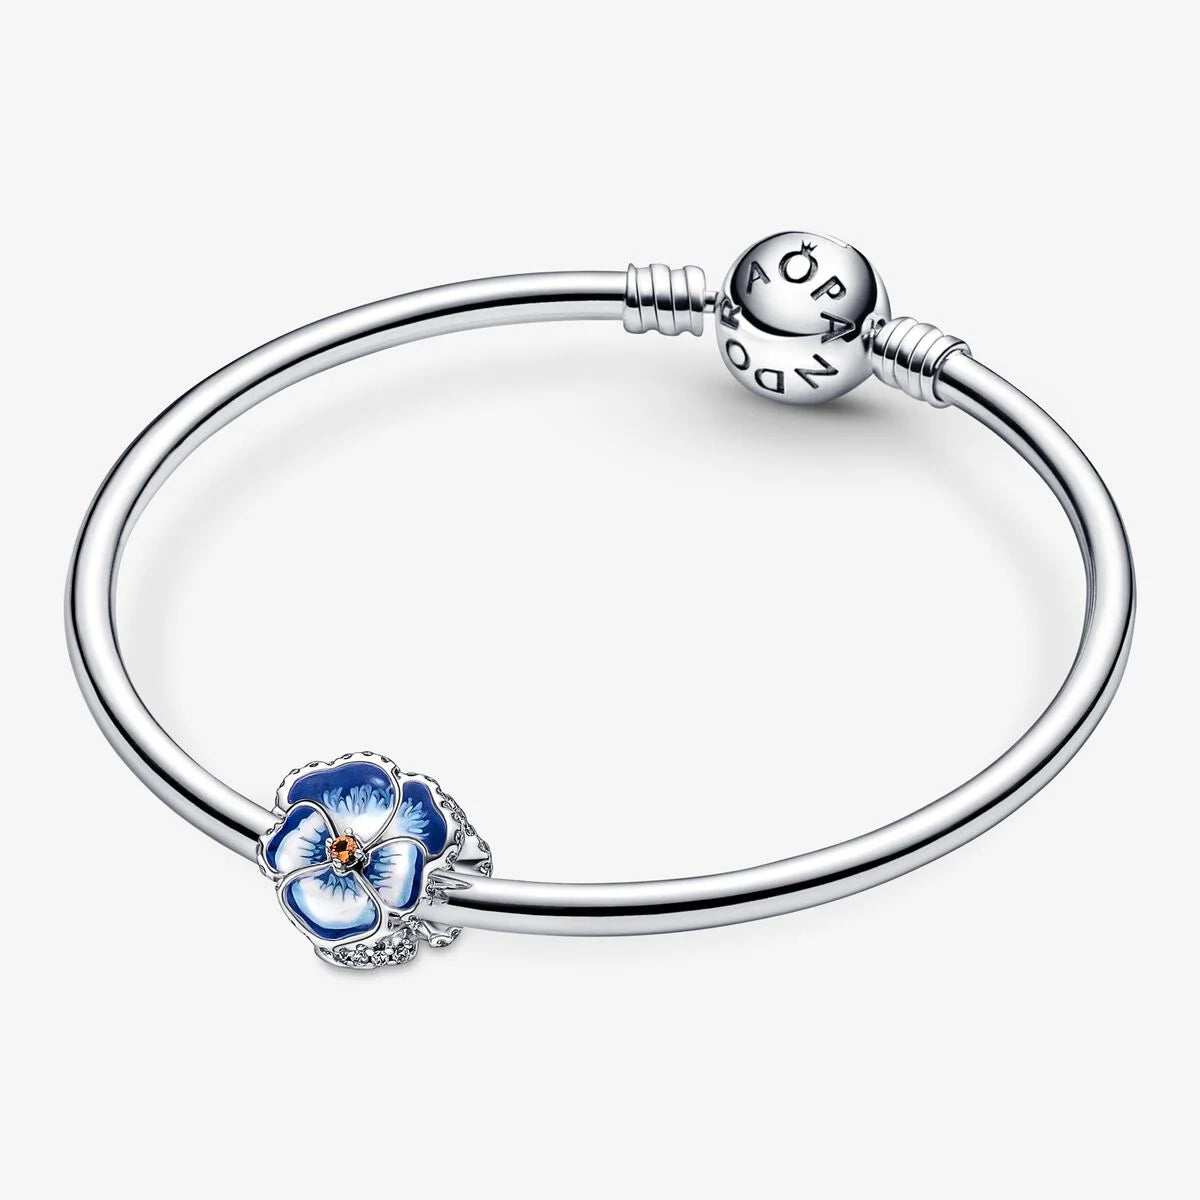 Pandora Charm: Blaues Stiefmütterchen - Emaille, Sterling-Silber